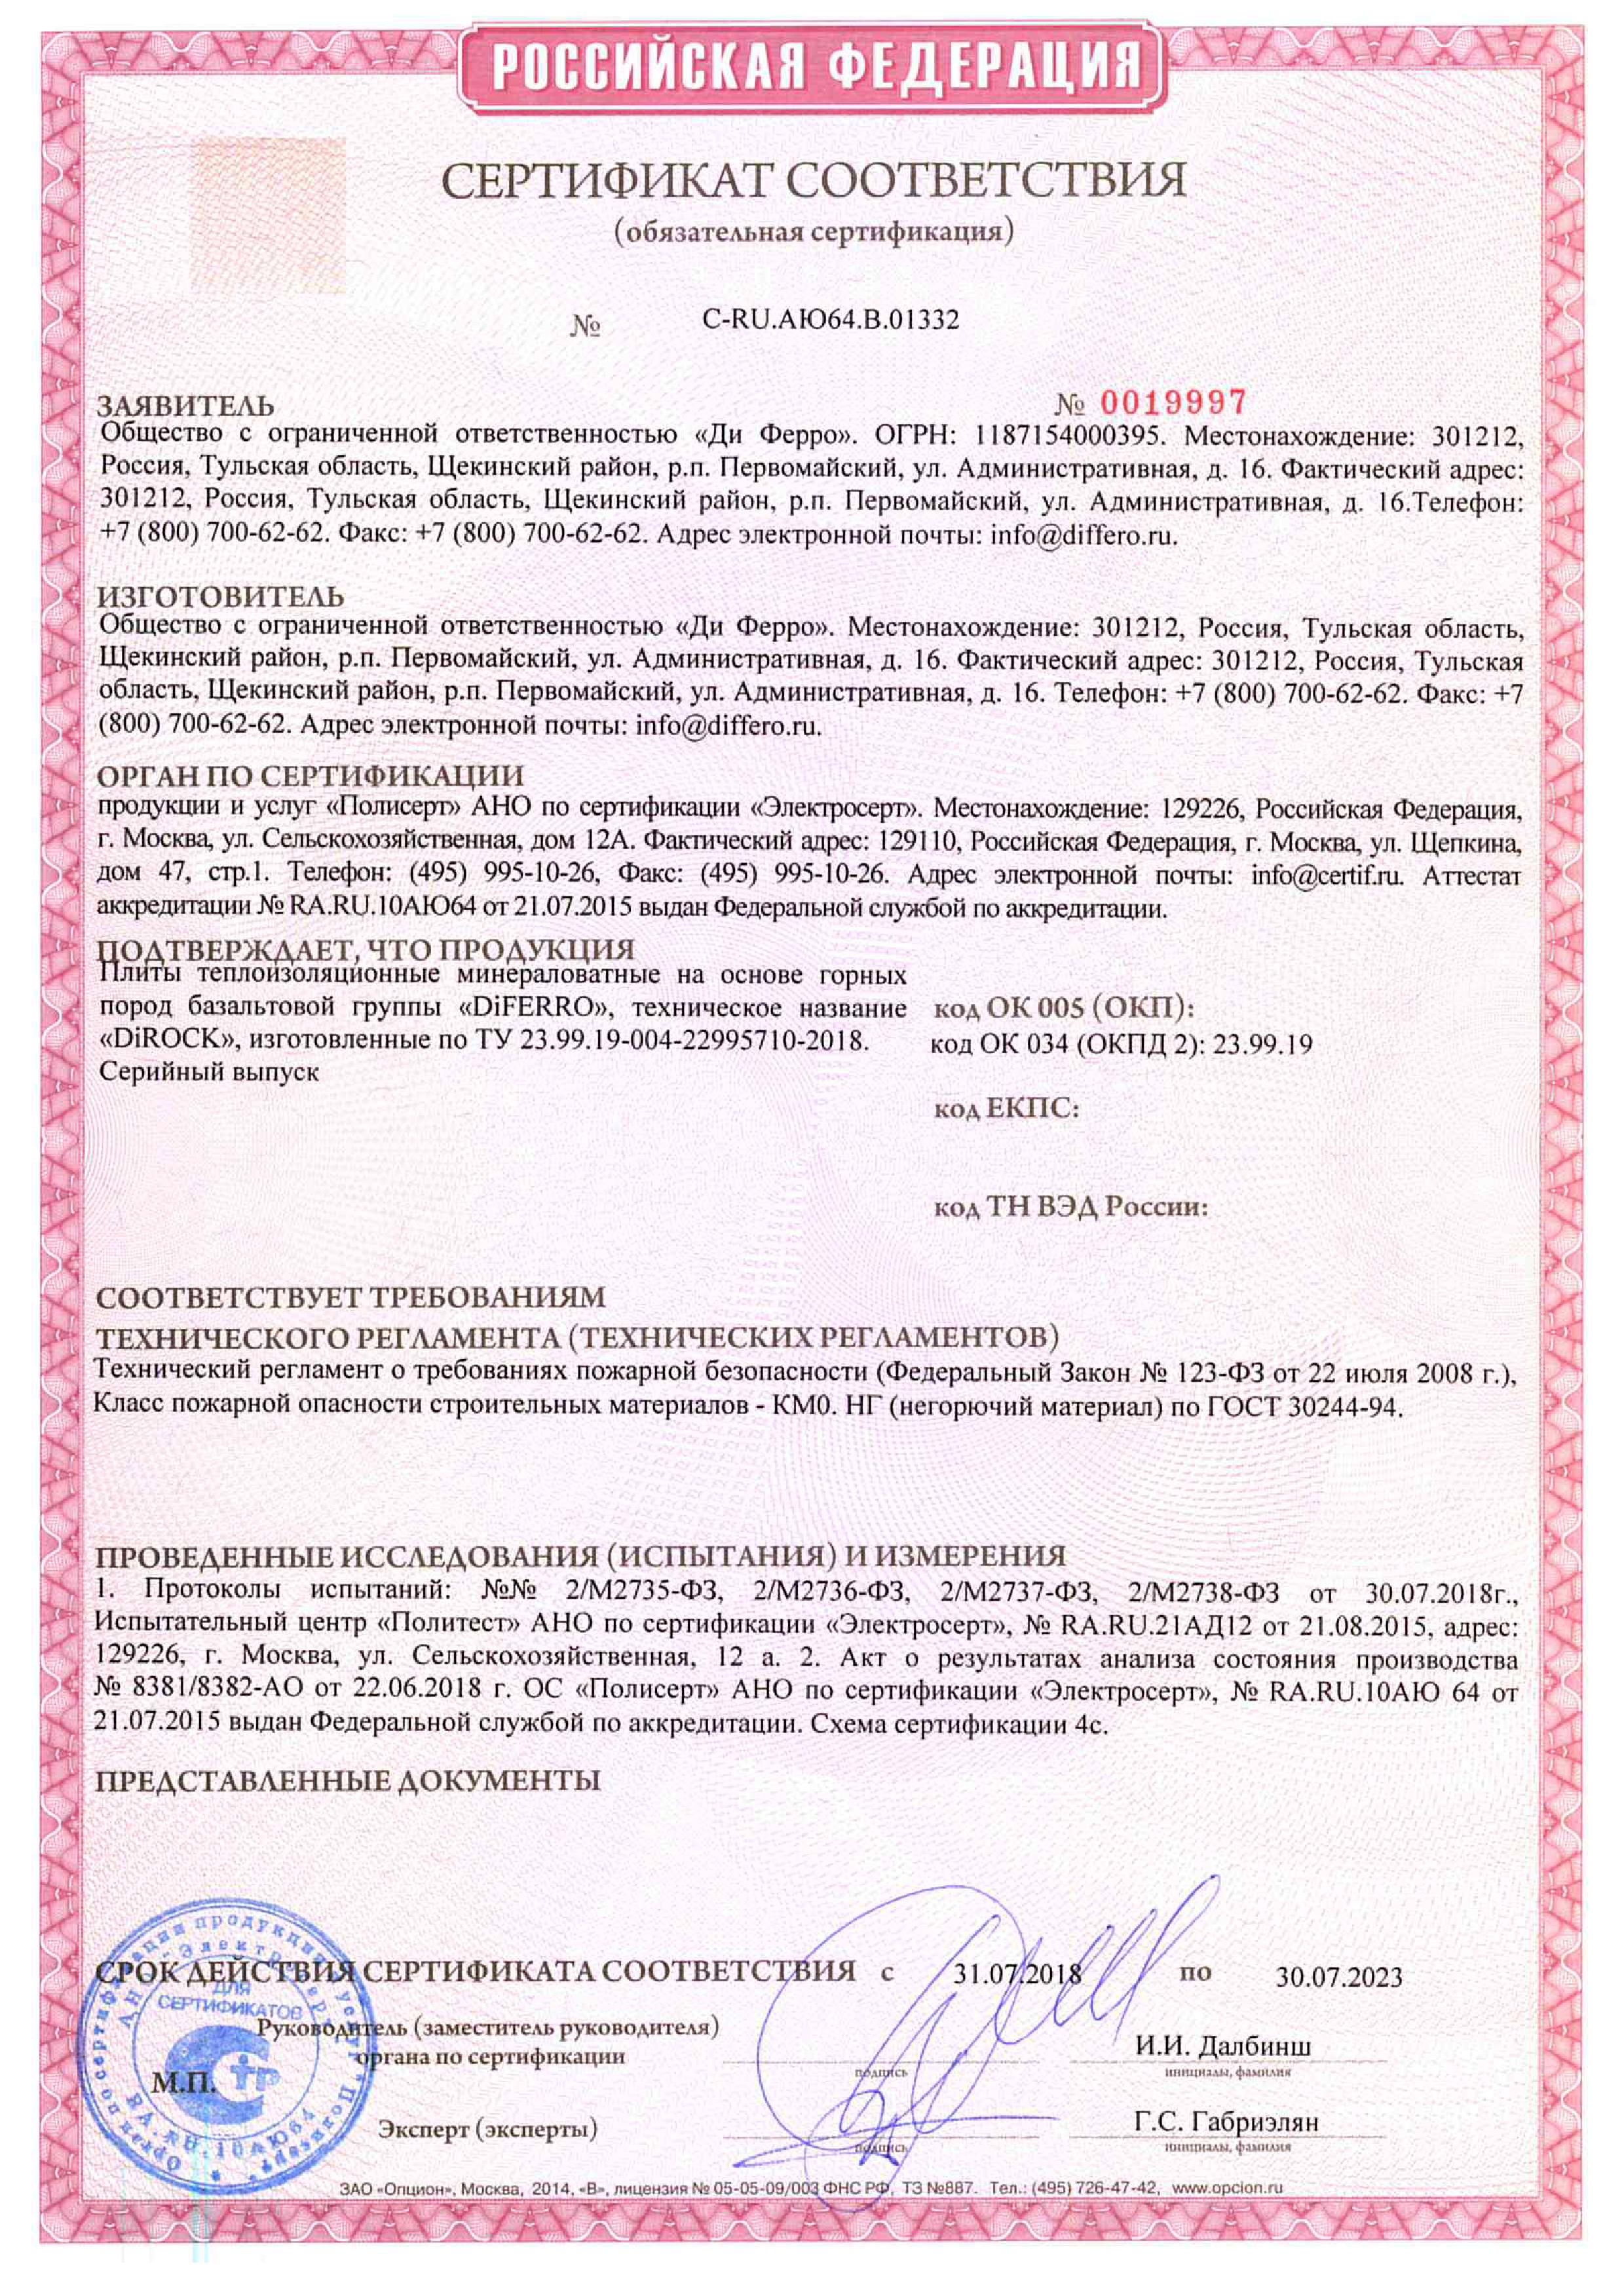 Сертификат соответствия пожарной безопасности Дирок1